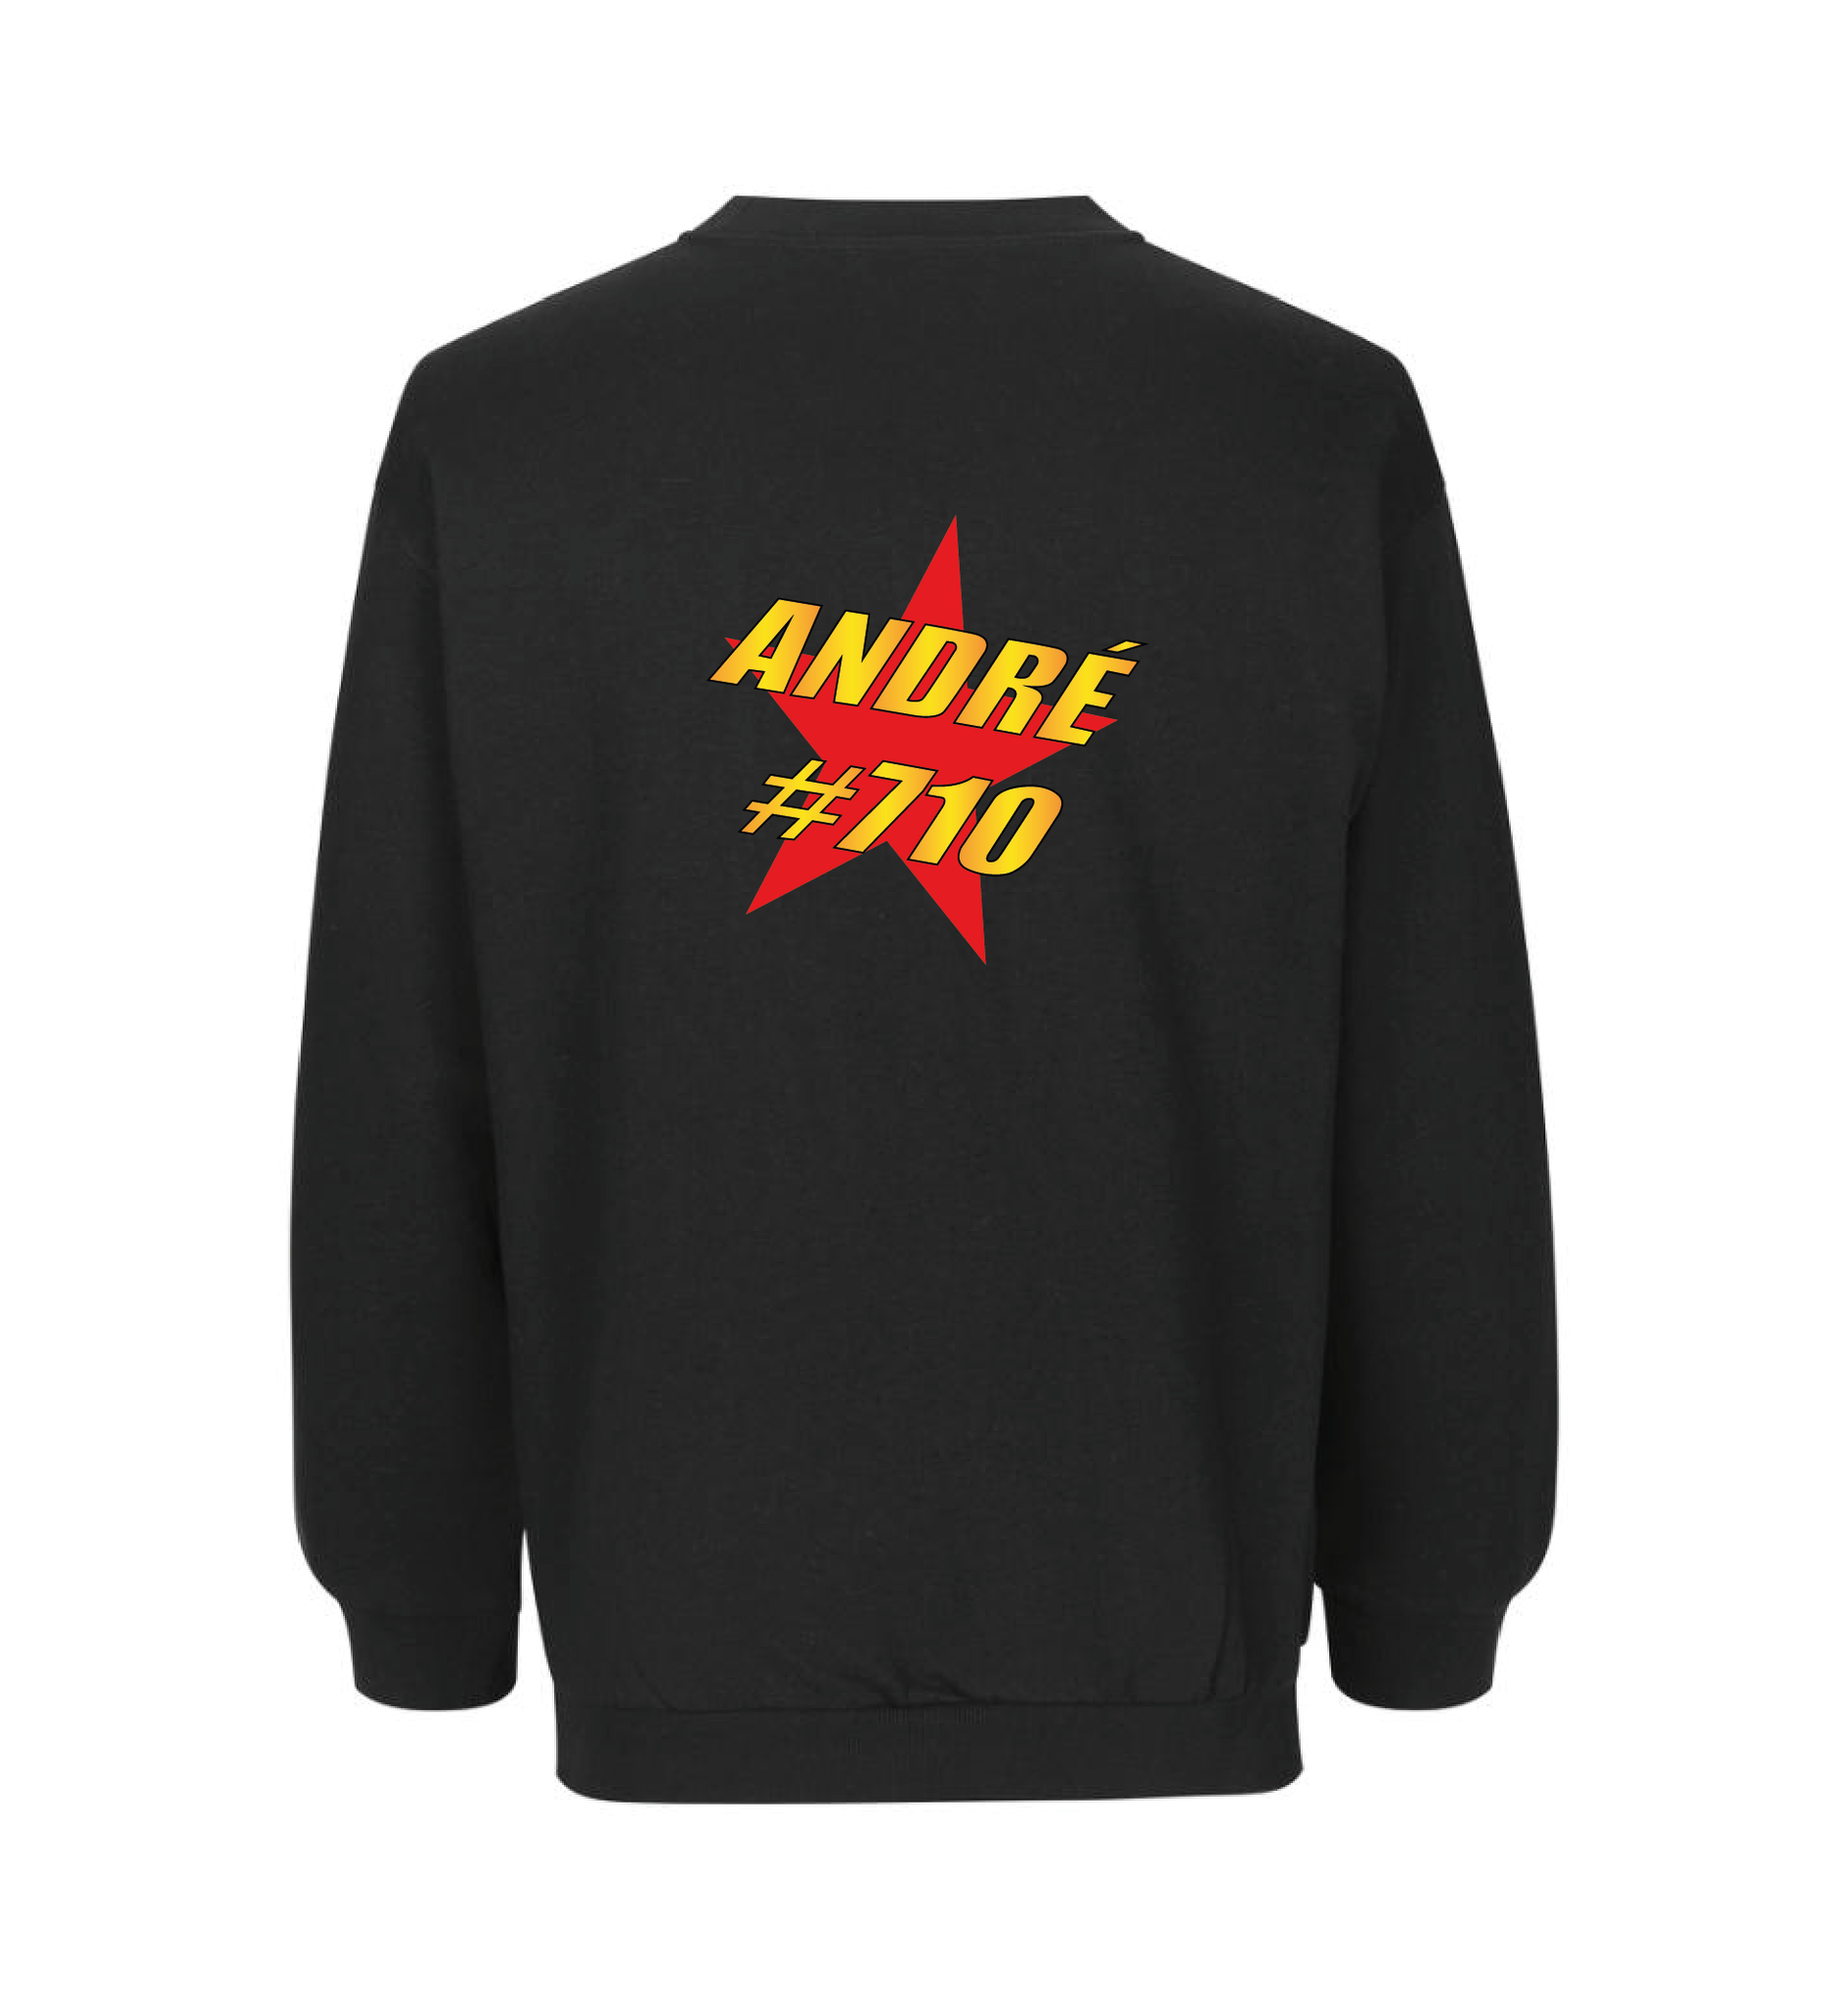 André #710 Sweatshirt